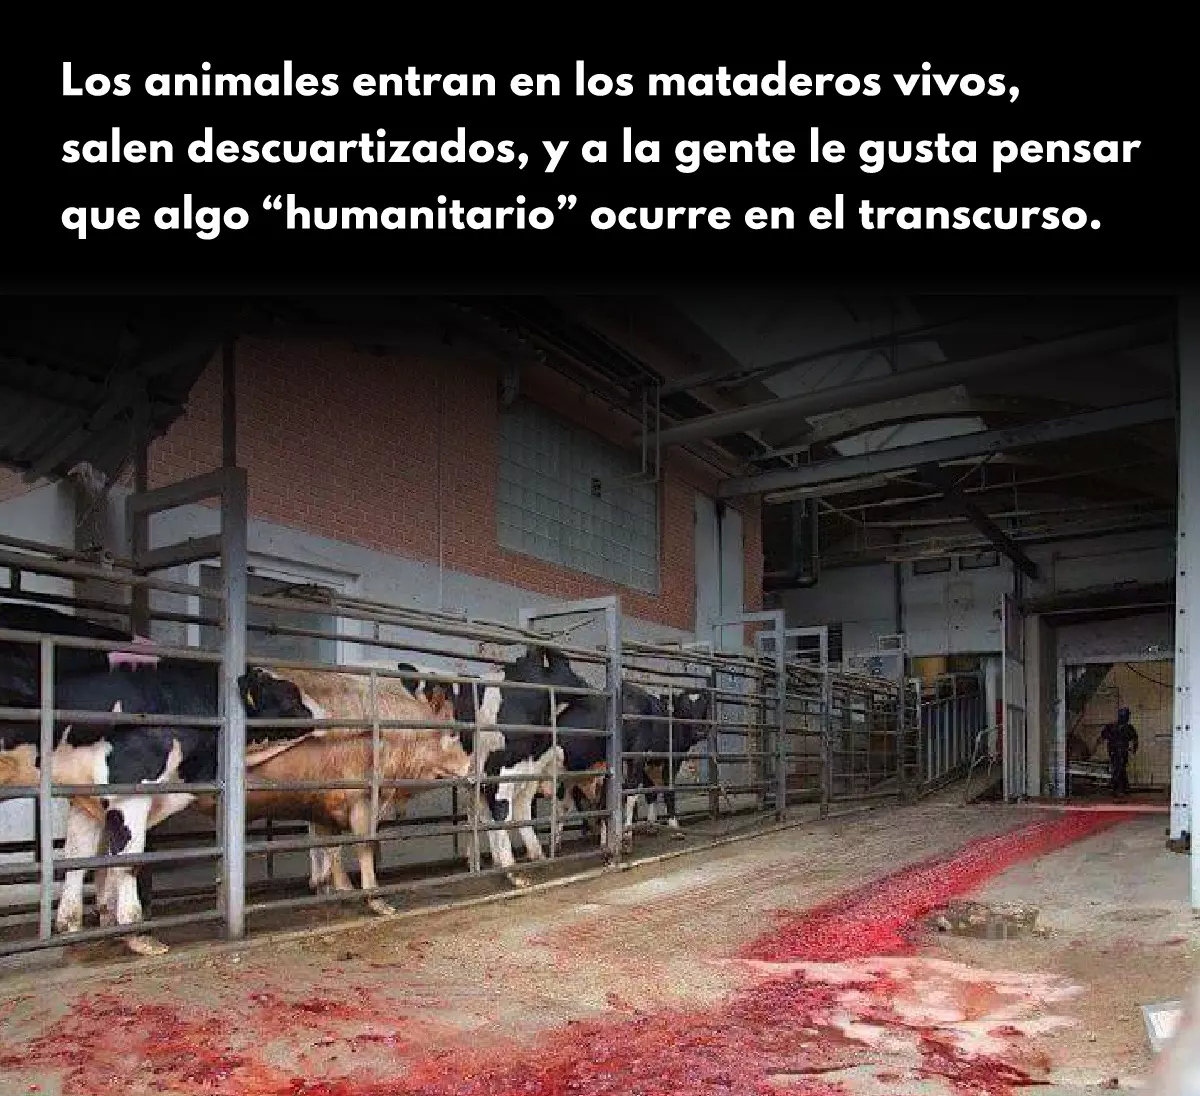 ¡Derechos Animales ya! - En un matadero no ocurre nada humanitario